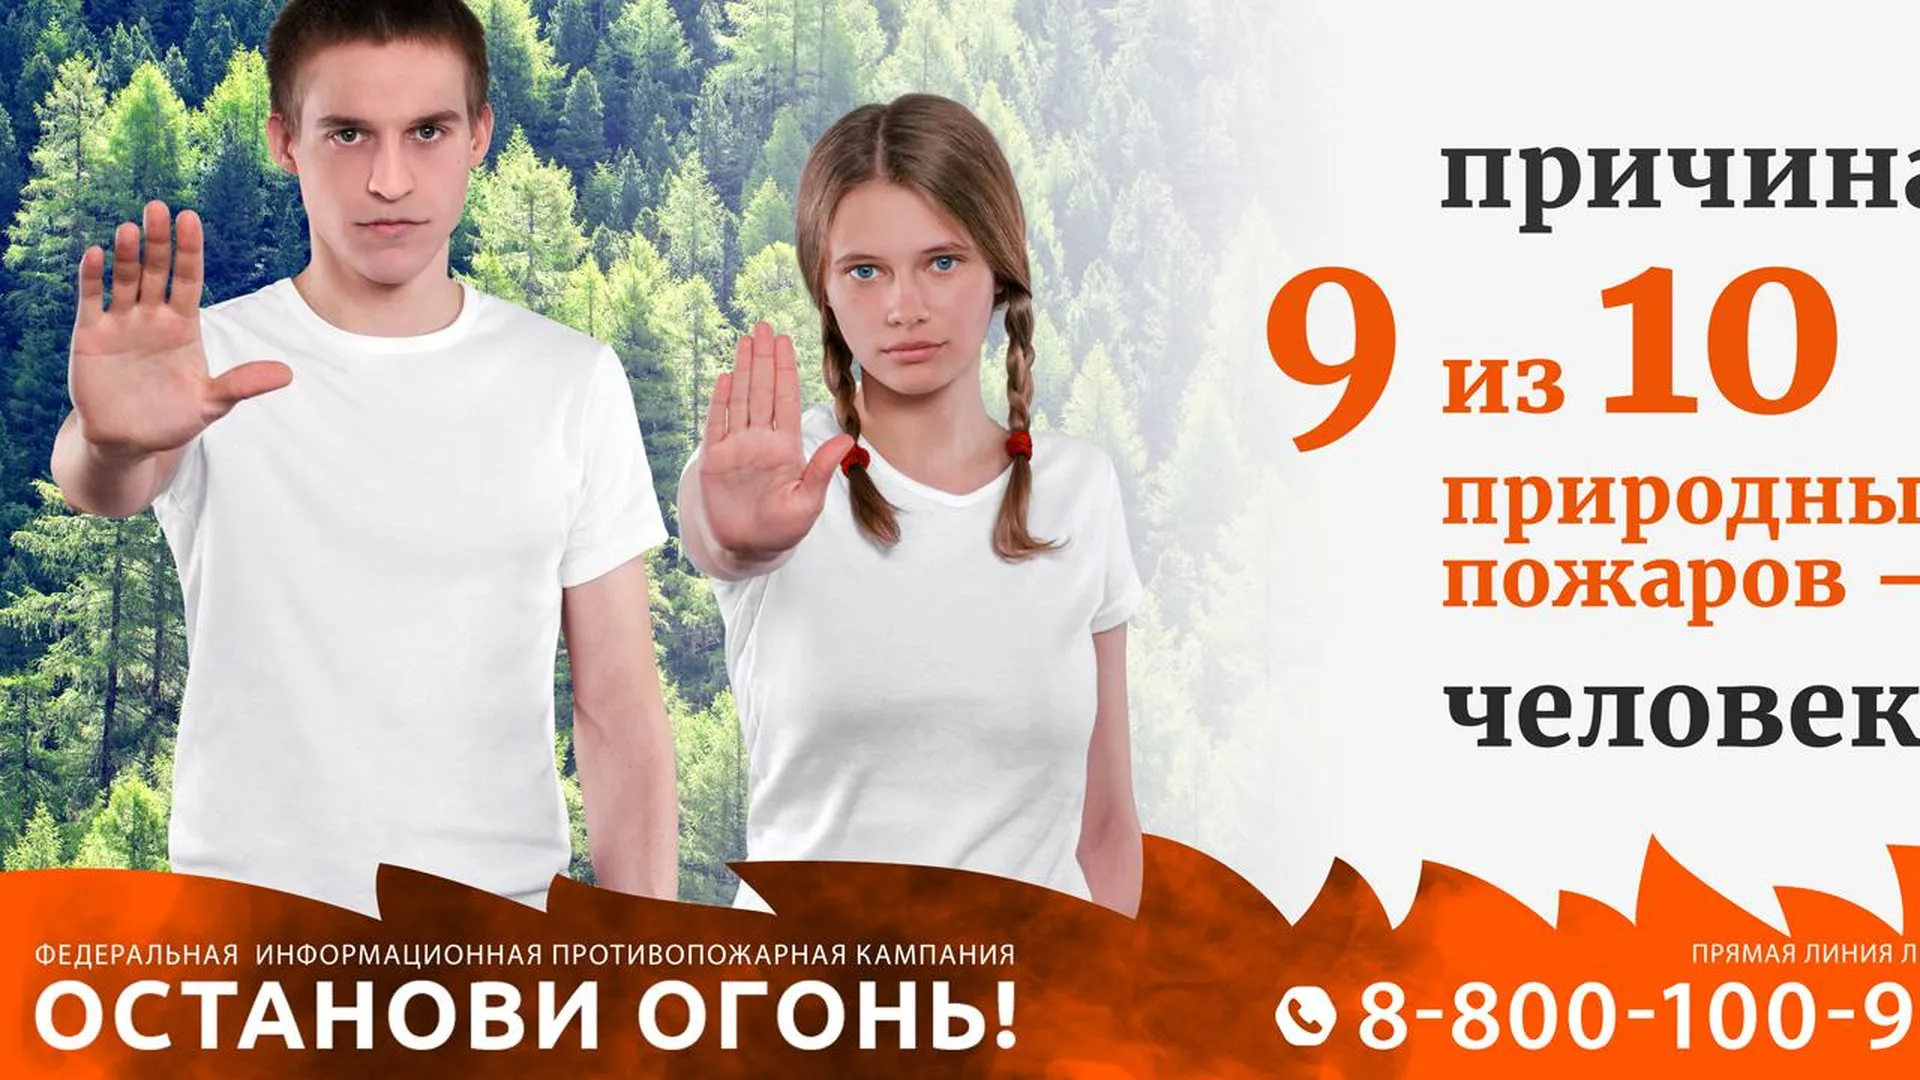 В России стартовала федеральная информационная противопожарная кампания «Останови огонь!»